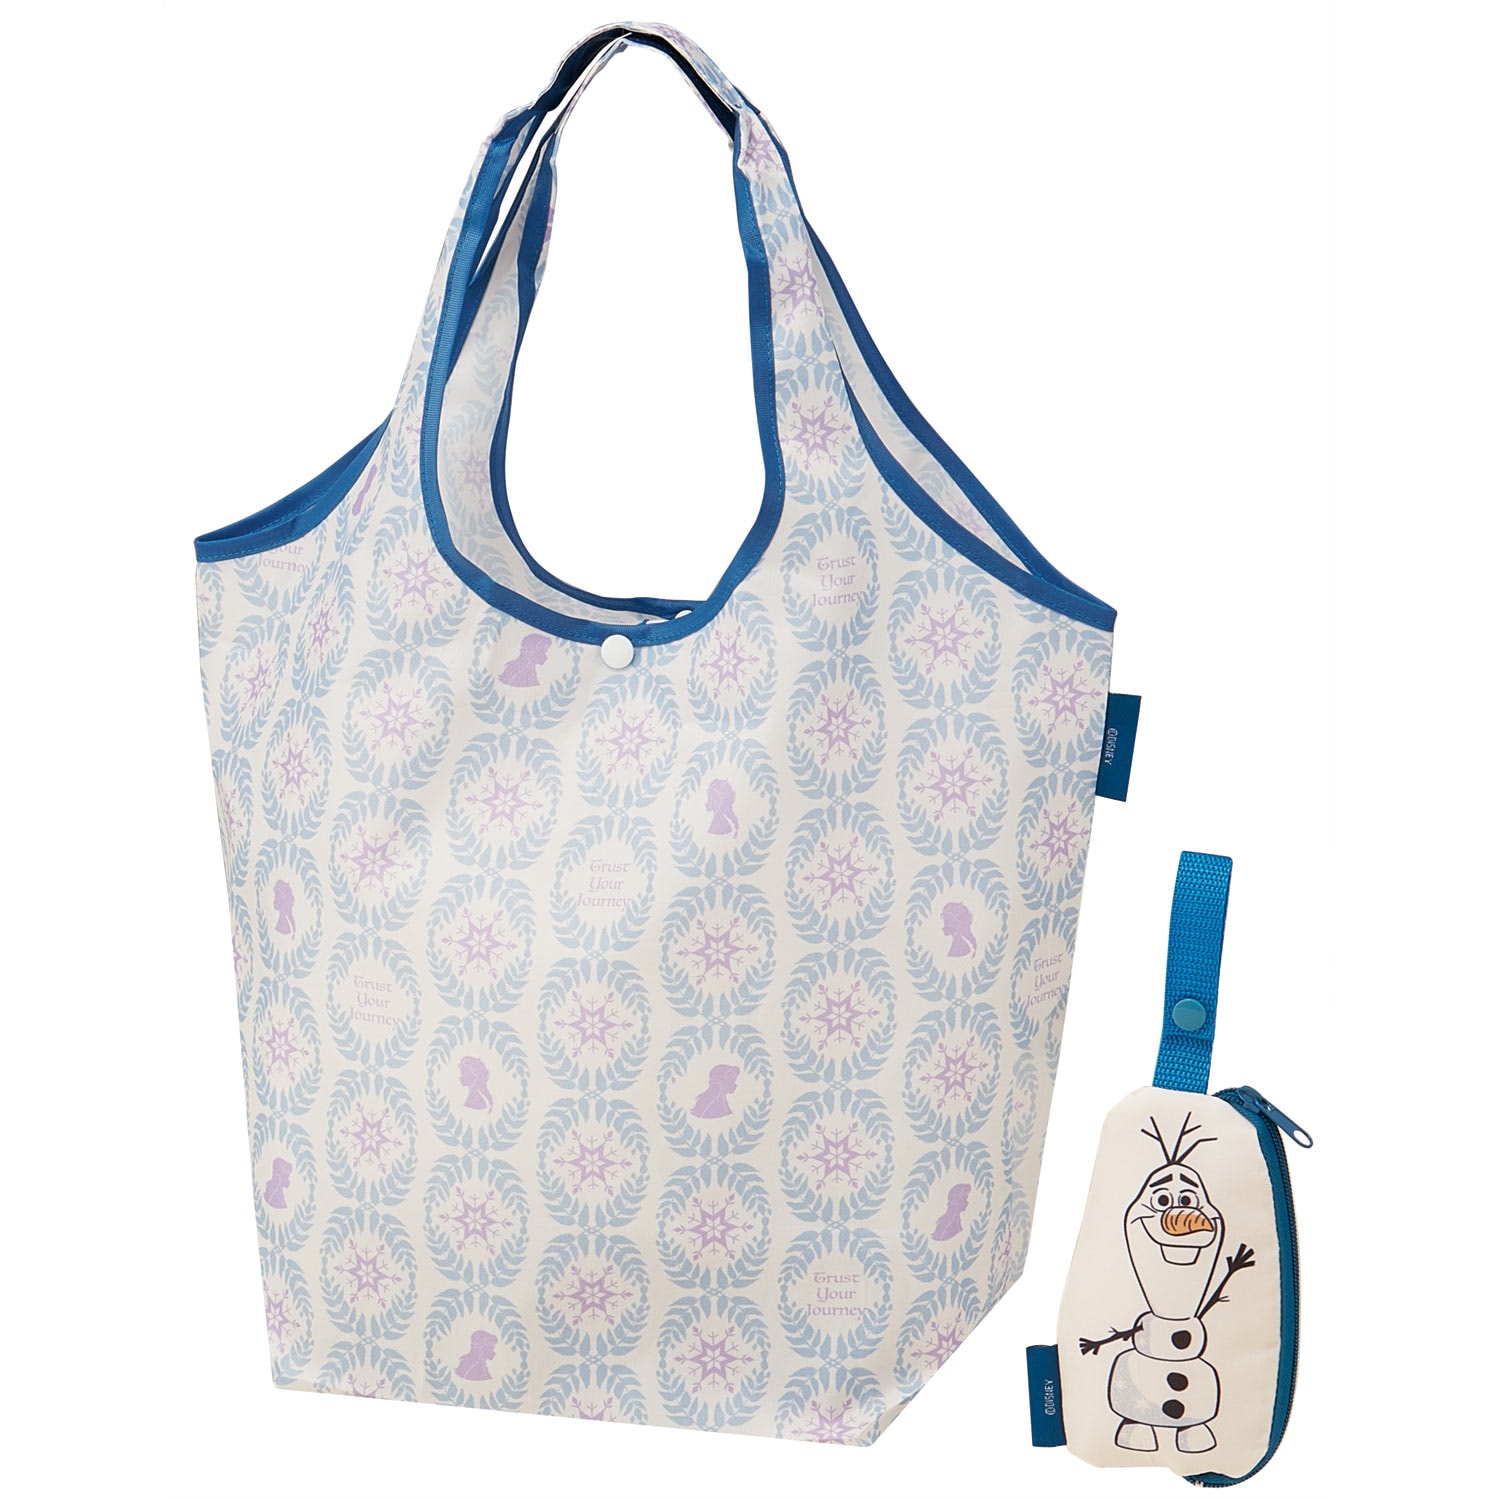 【ディズニー/Disney】かばんに付けられるポーチ付き ショッピングバッグ(選べるキャラクター)画像